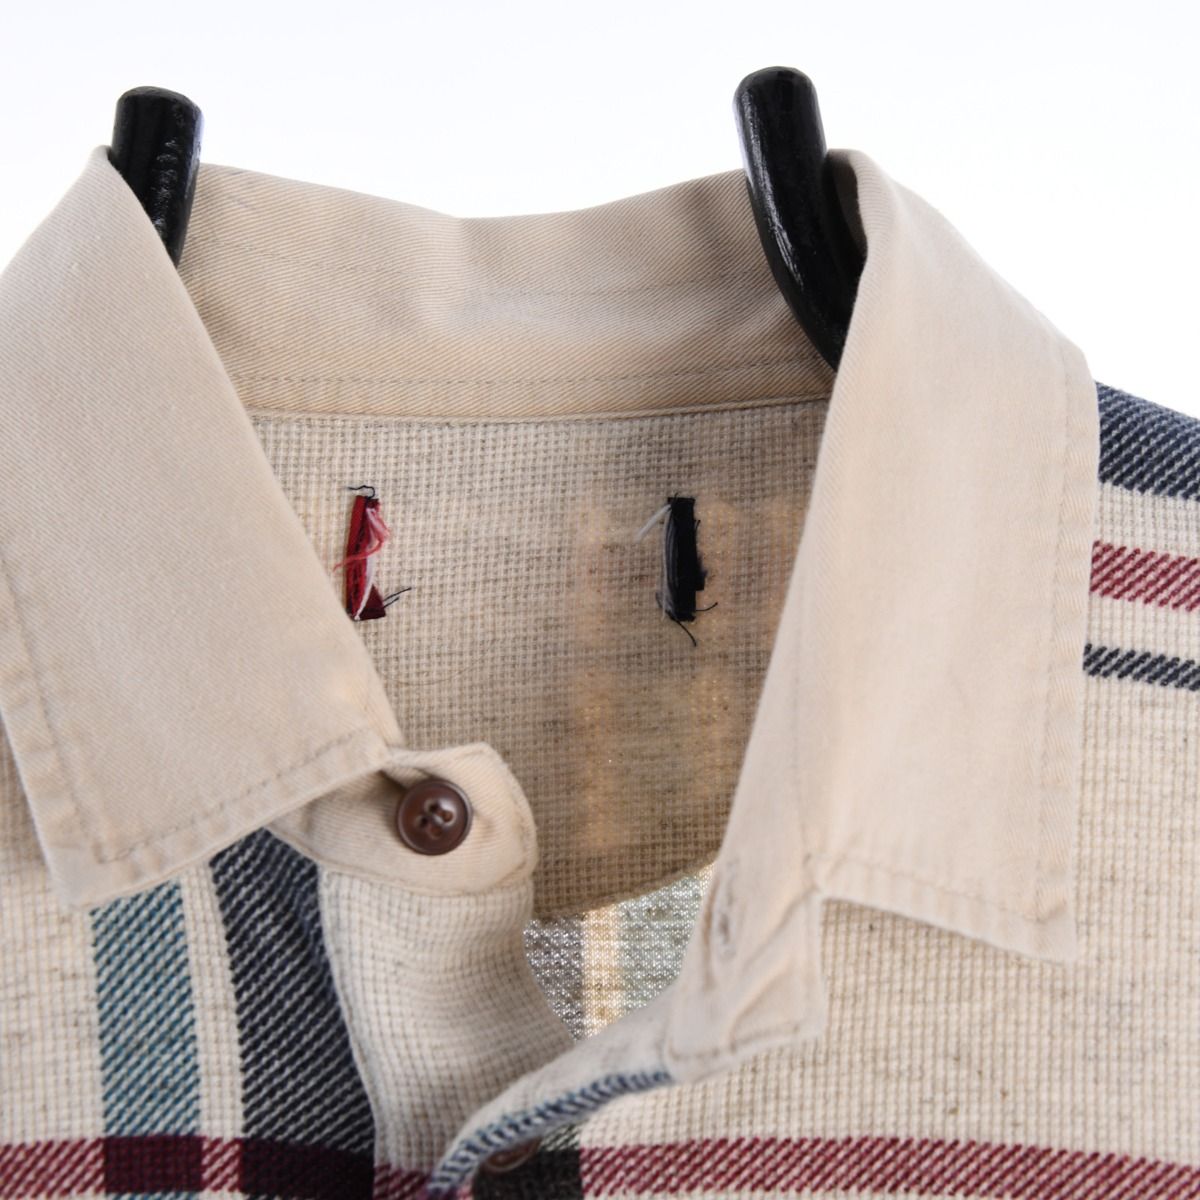 Ralph Lauren Chaps Long Sleeve Polo Shirt